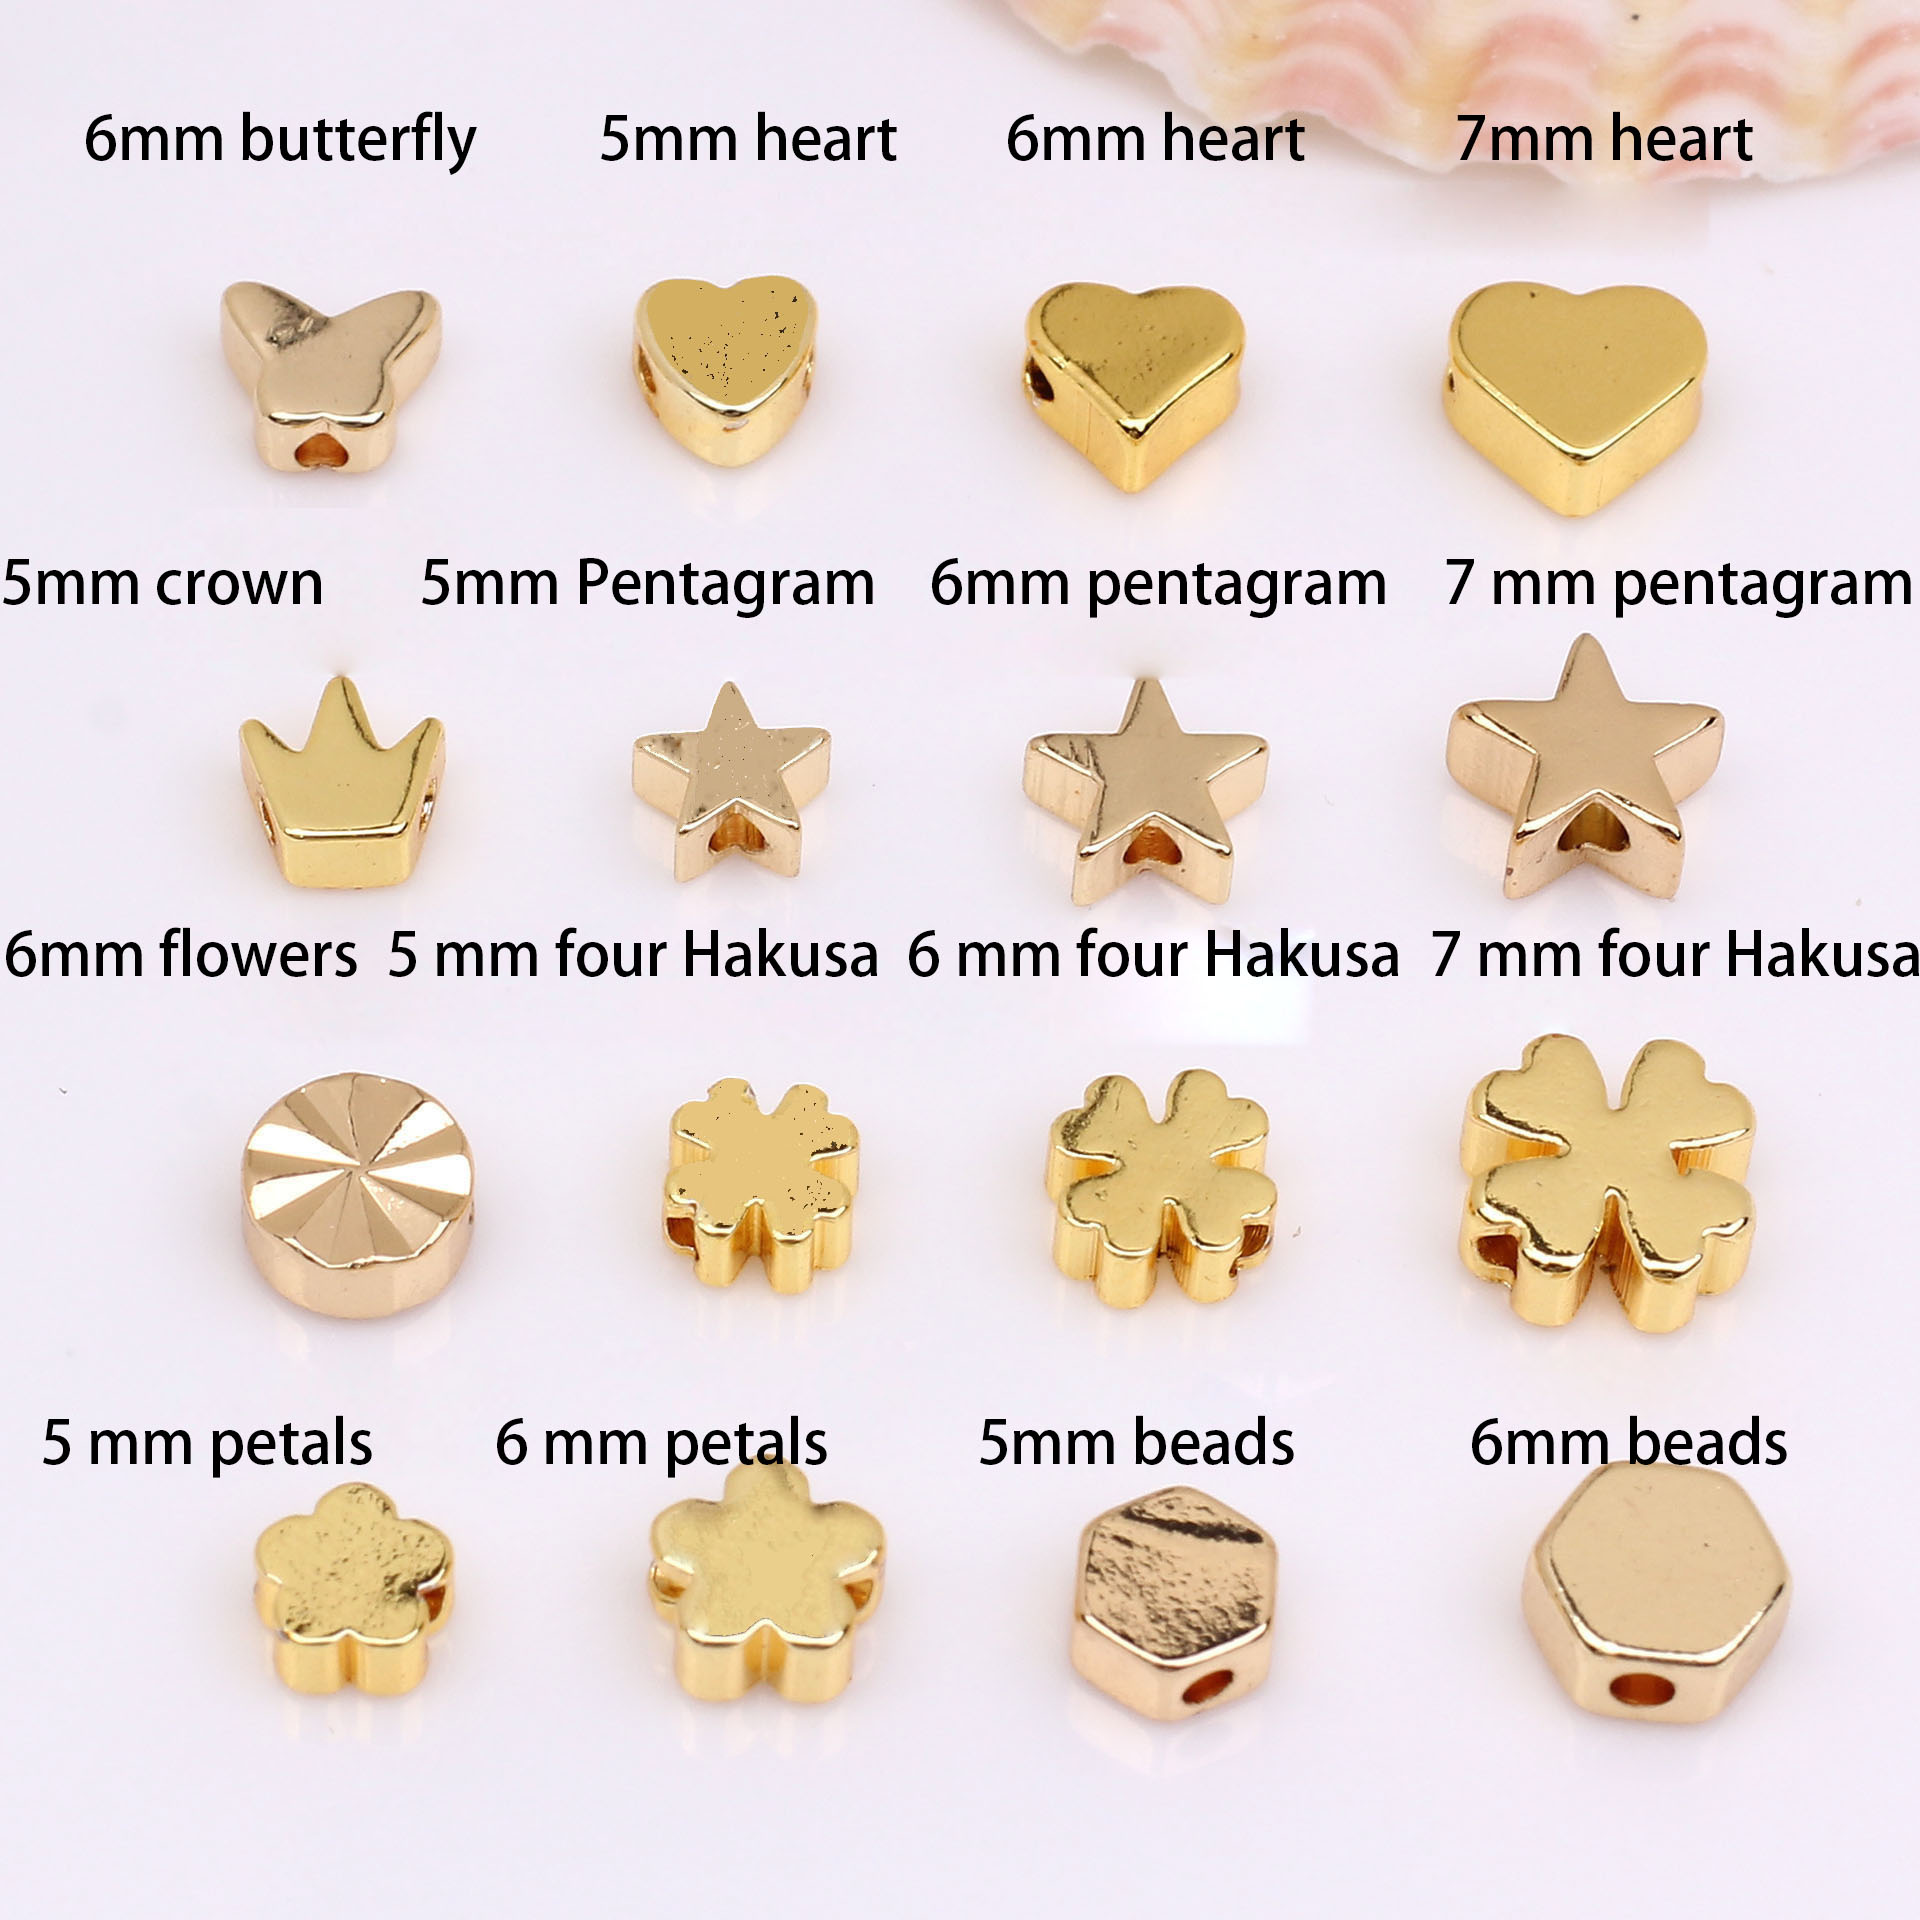 14-carat gold, color retention 5 mm four Hakusa